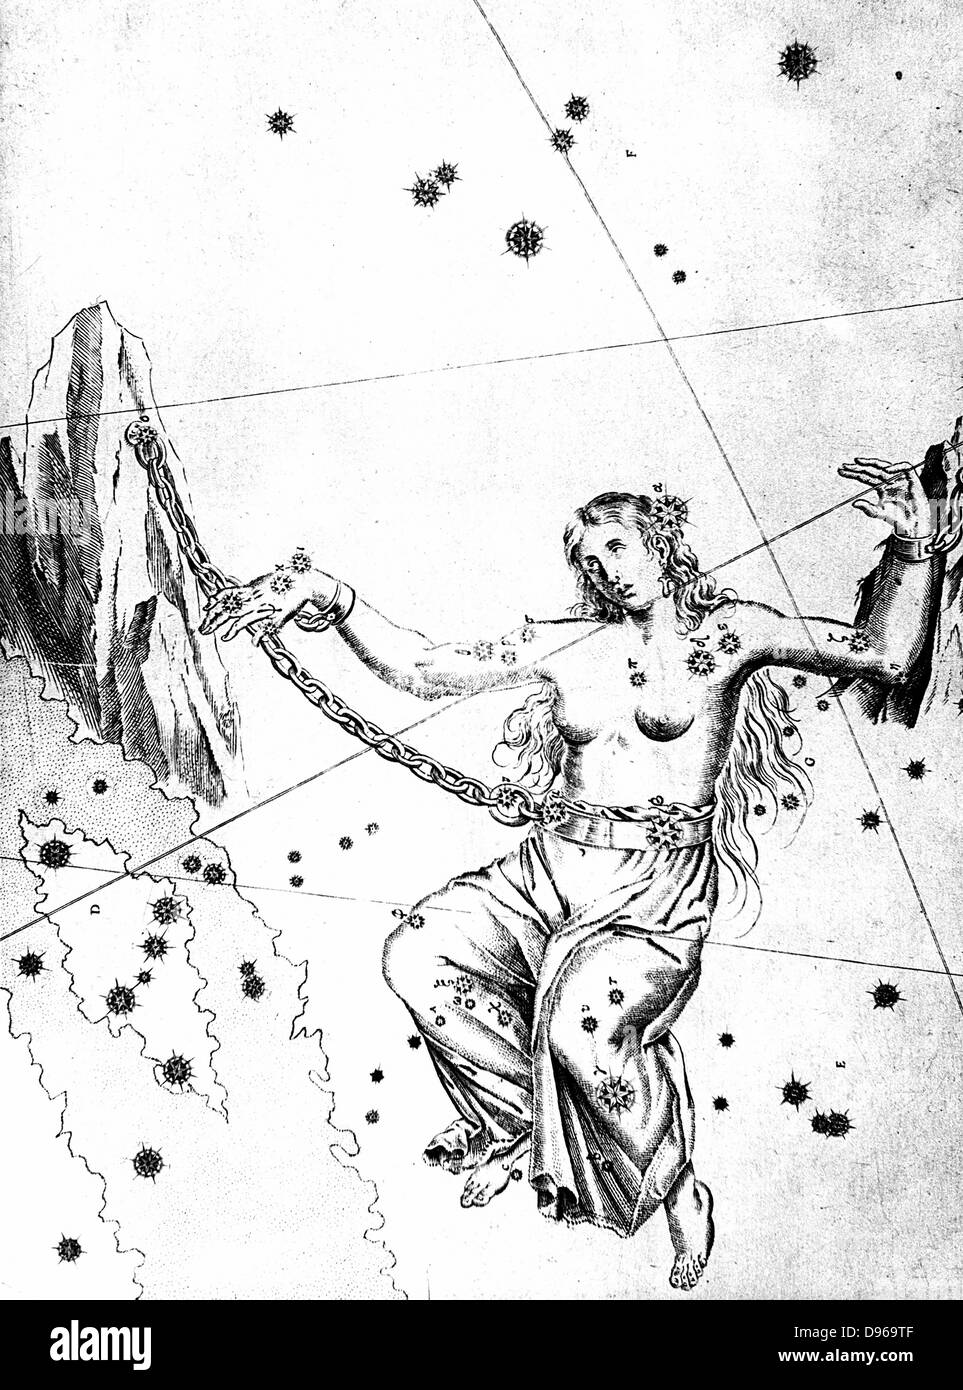 Constelación de Andrómeda de Johannes Bayer 'Uranometria' Ulm 1723. Andrómeda encadenada a las rocas esperando el rescate por Perseus. Copperplate grabado Foto de stock